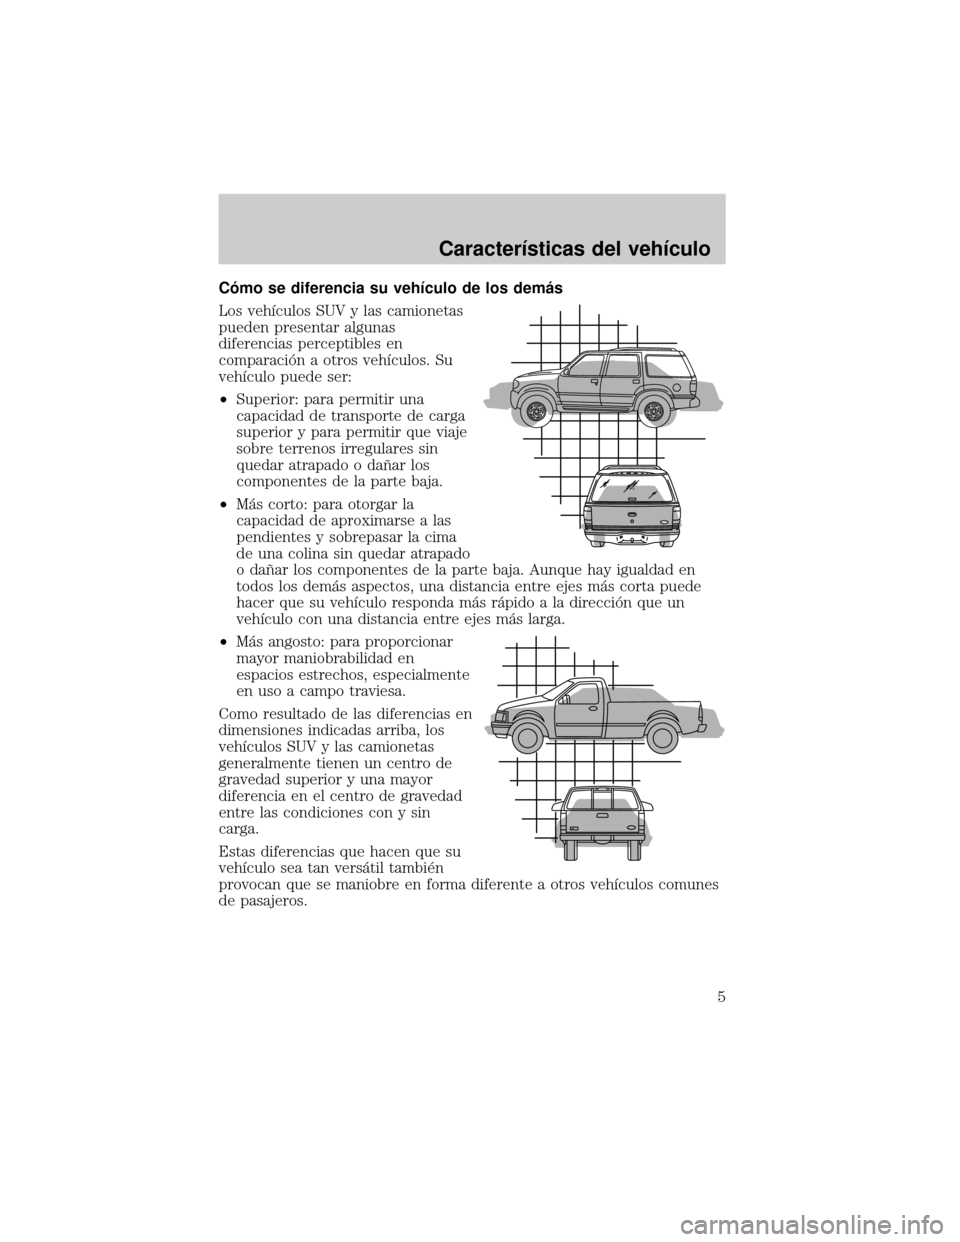 Mercury Mountaineer 2005  Manual de Usuario (in Spanish) Câmo se diferencia su vehÛculo de los demµs
Los vehÛculos SUV y las camionetas
pueden presentar algunas
diferencias perceptibles en
comparaciân a otros vehÛculos. Su
vehÛculo puede ser:
²Super